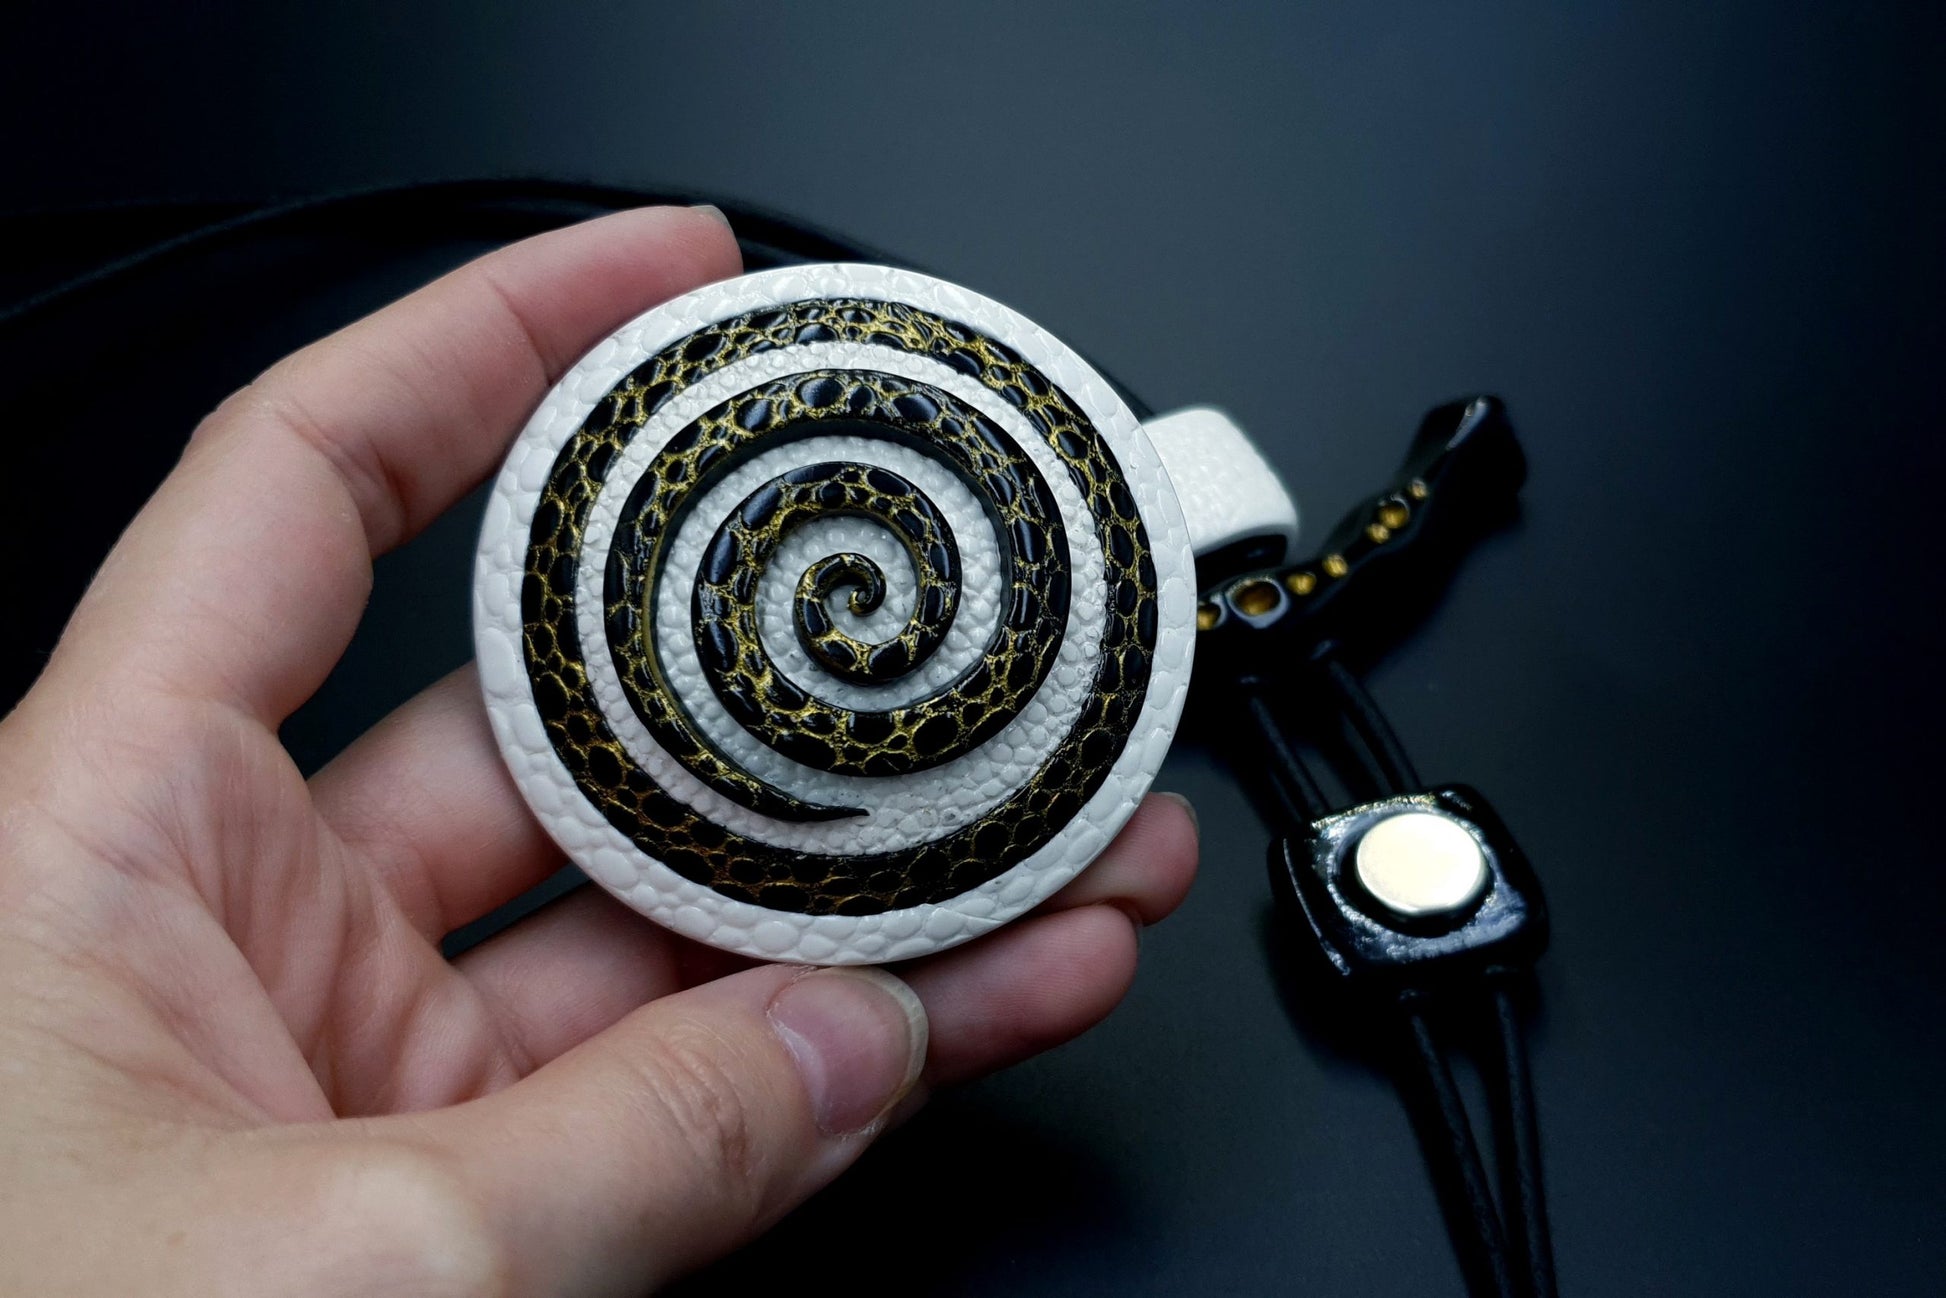 Yin-Yang Swirl Pendant - Cosmic Infinity Pendant SweetyBijou Jewelry   